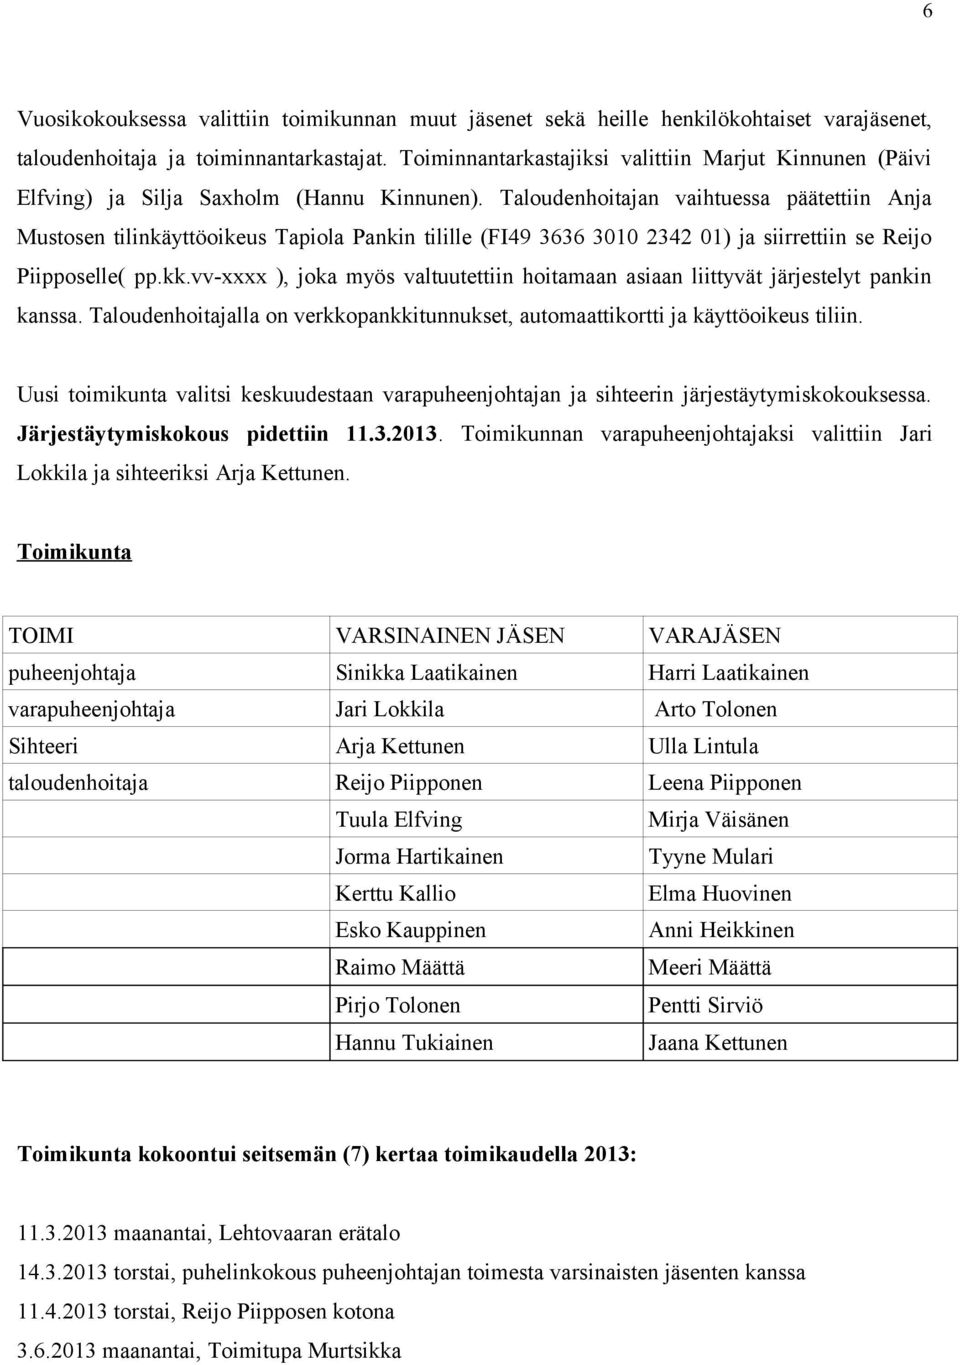 Taloudenhoitajan vaihtuessa päätettiin Anja Mustosen tilinkäyttöoikeus Tapiola Pankin tilille (FI49 3636 3010 2342 01) ja siirrettiin se Reijo Piipposelle( pp.kk.